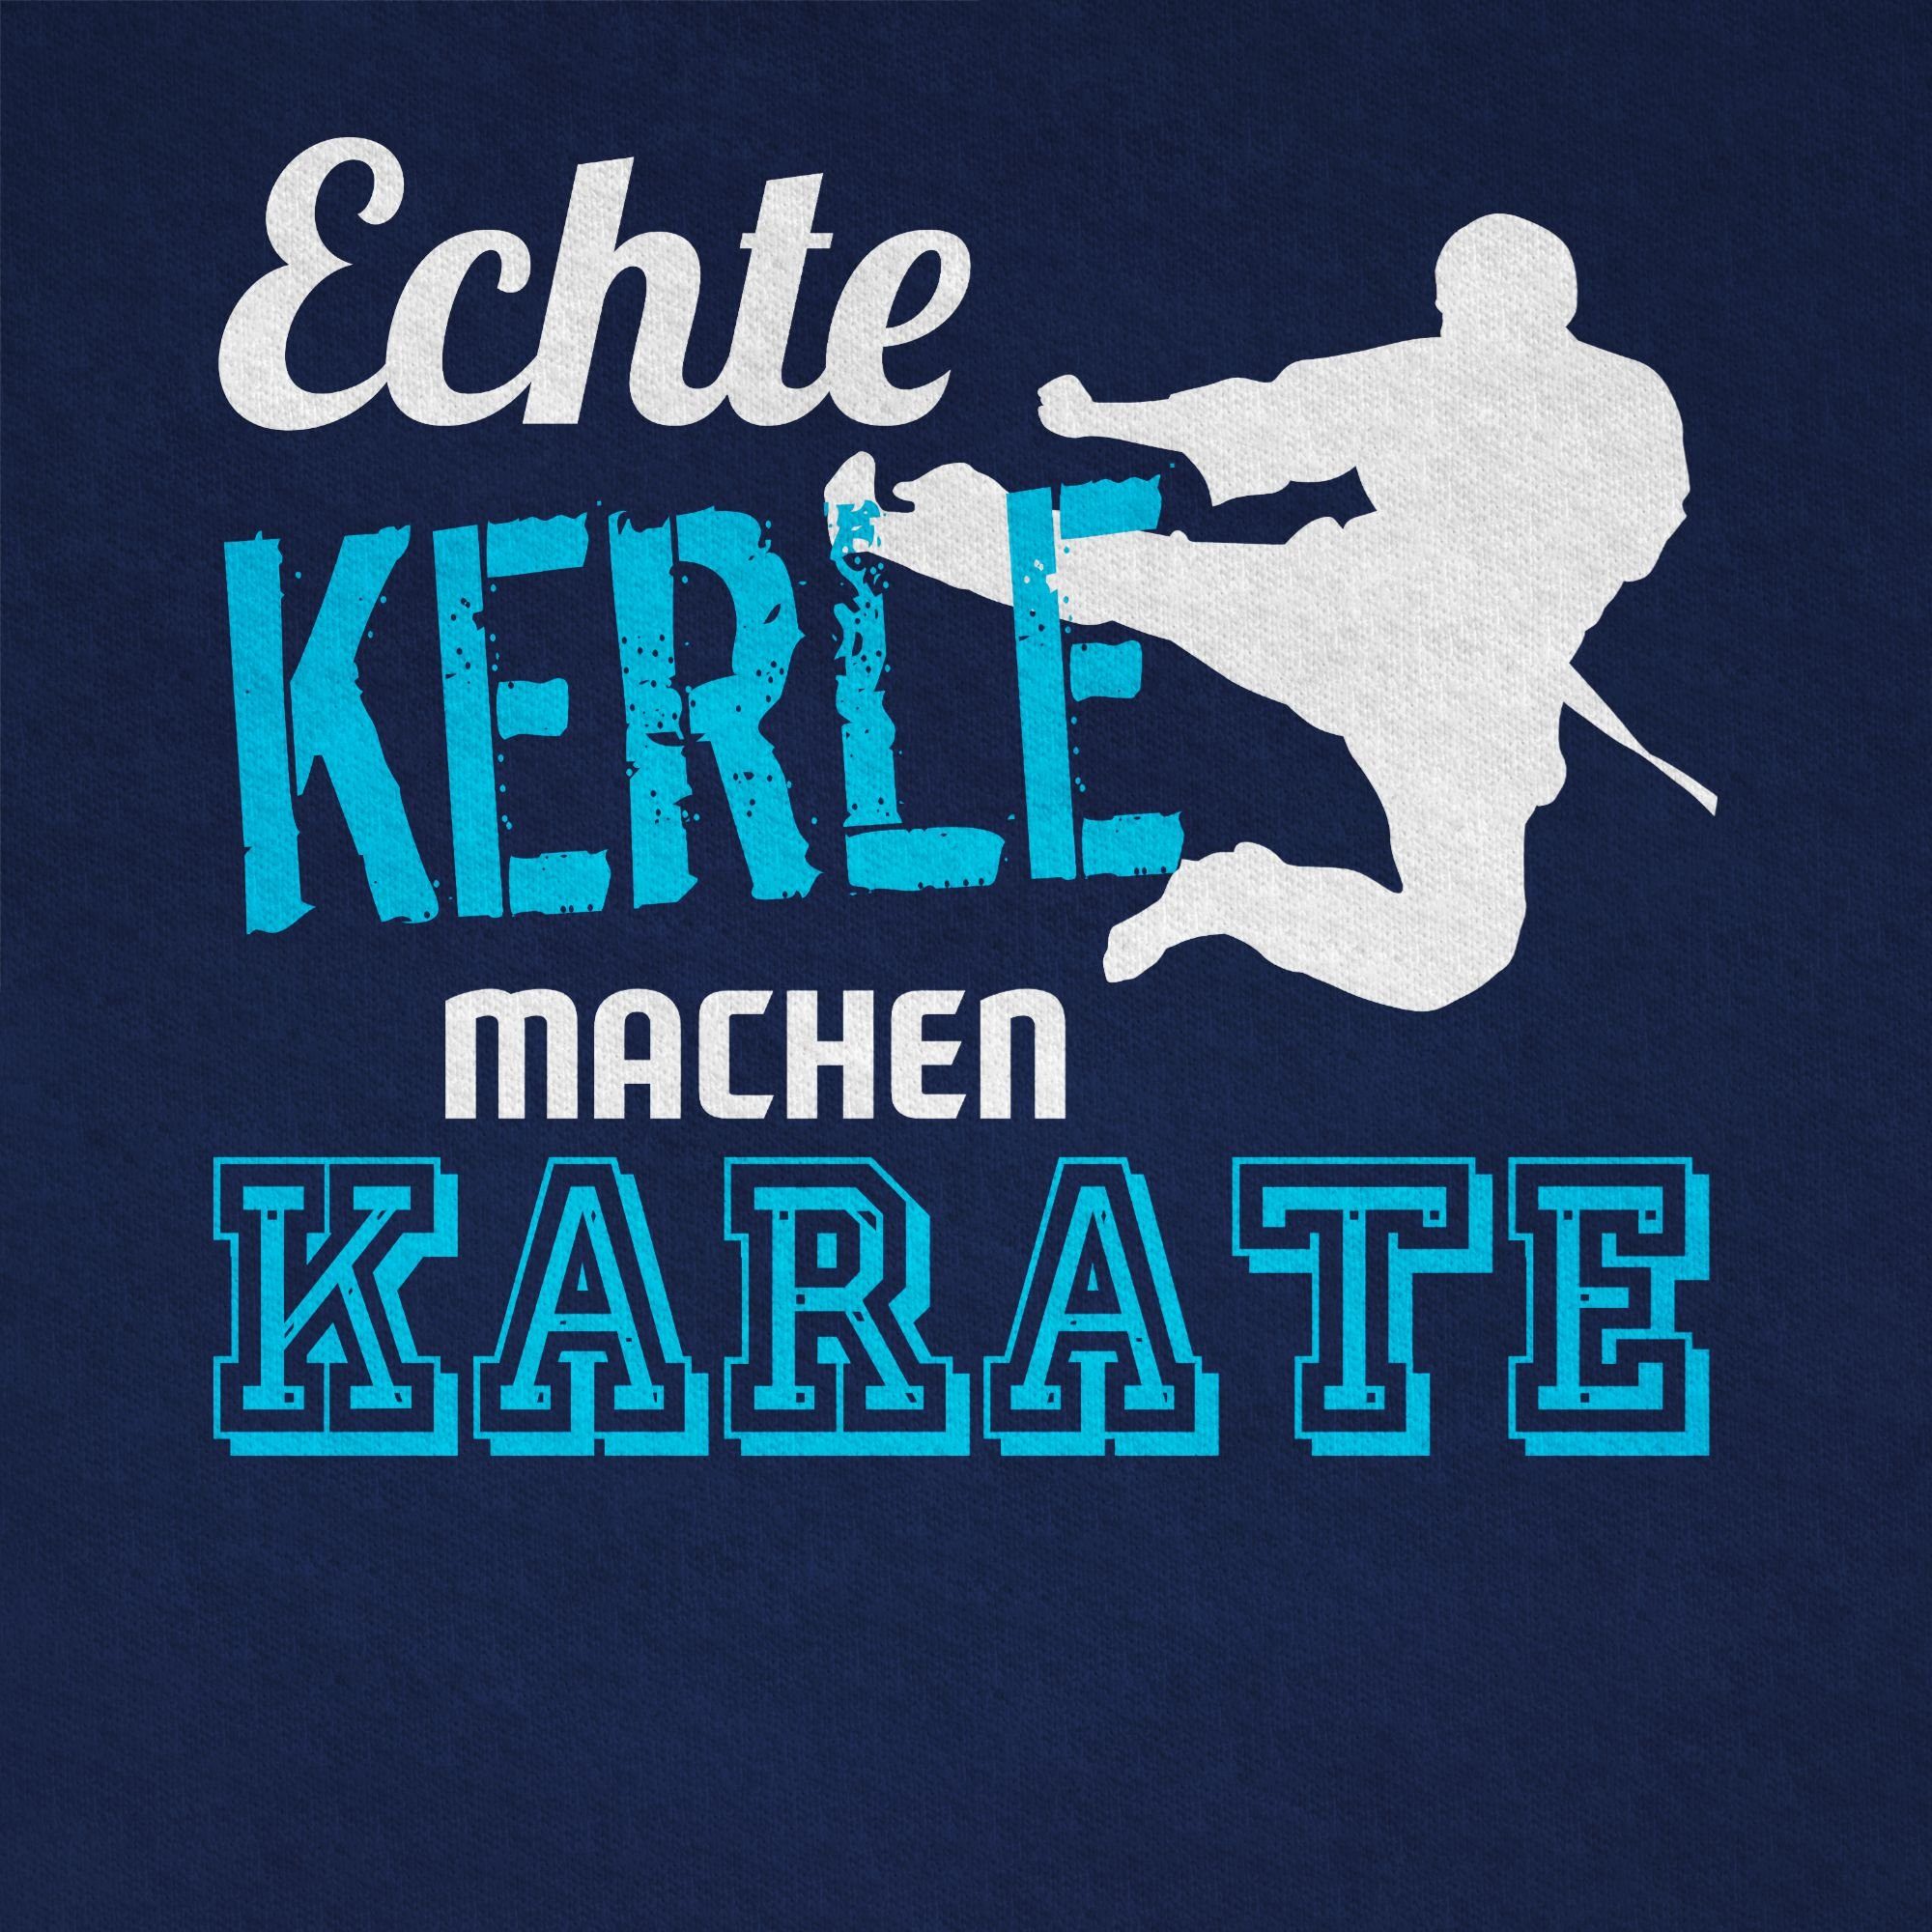 T-Shirt Echte Kleidung Kinder Dunkelblau 1 Sport Karate Shirtracer machen Kerle